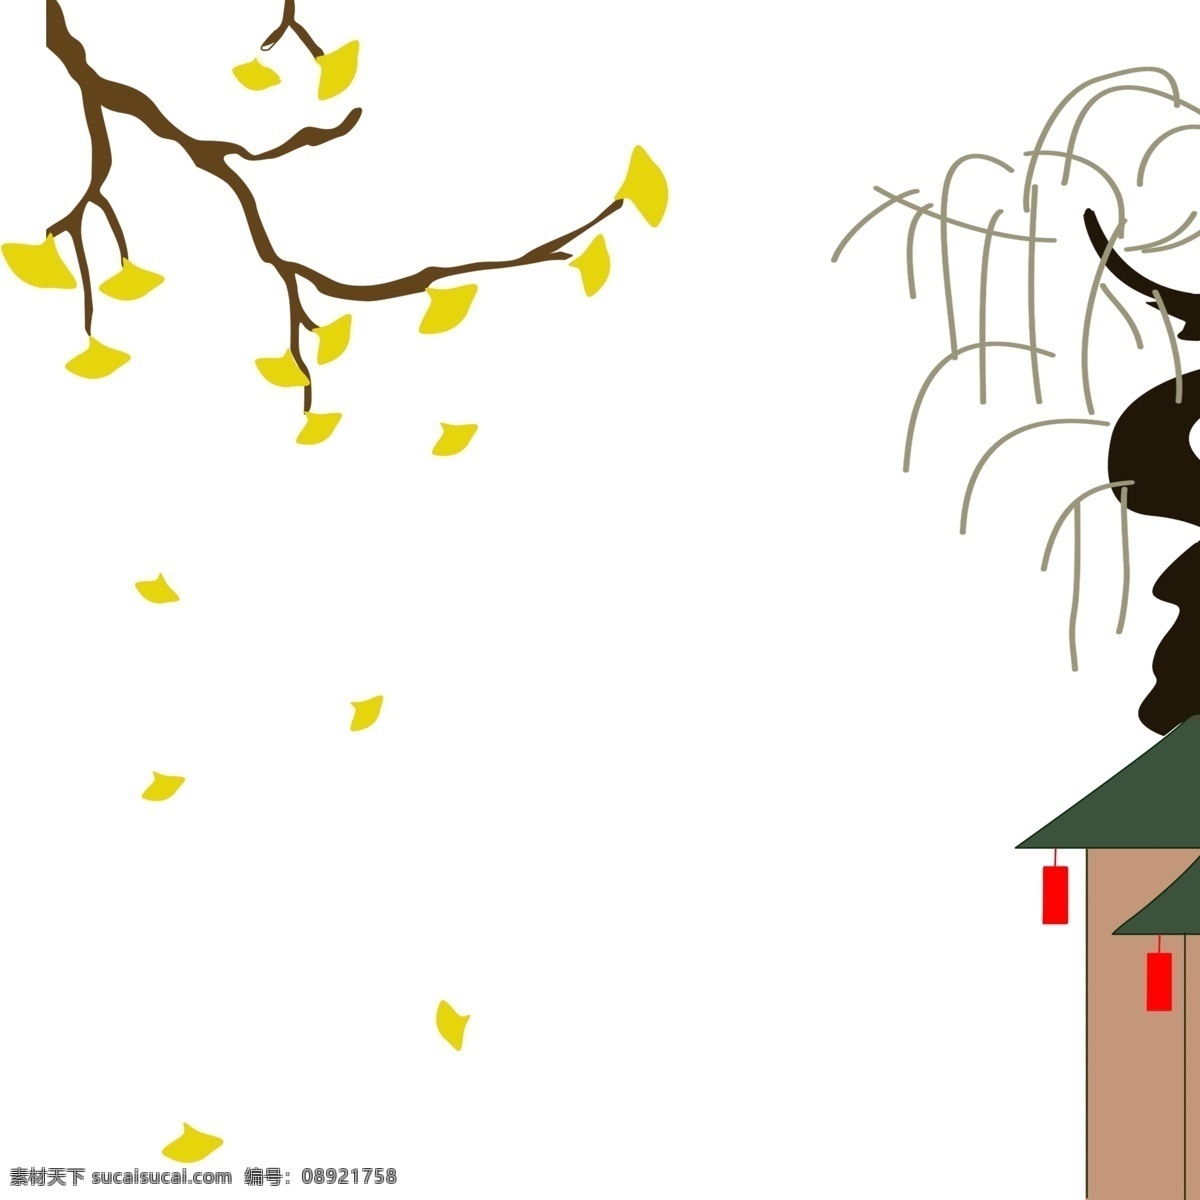 漂浮 银杏叶 叶 红灯笼房子 卡通手绘 免扣 手绘插画 伸展的树枝 飘落的银杏叶 秋天 房子 灯笼 树枝 边框文理